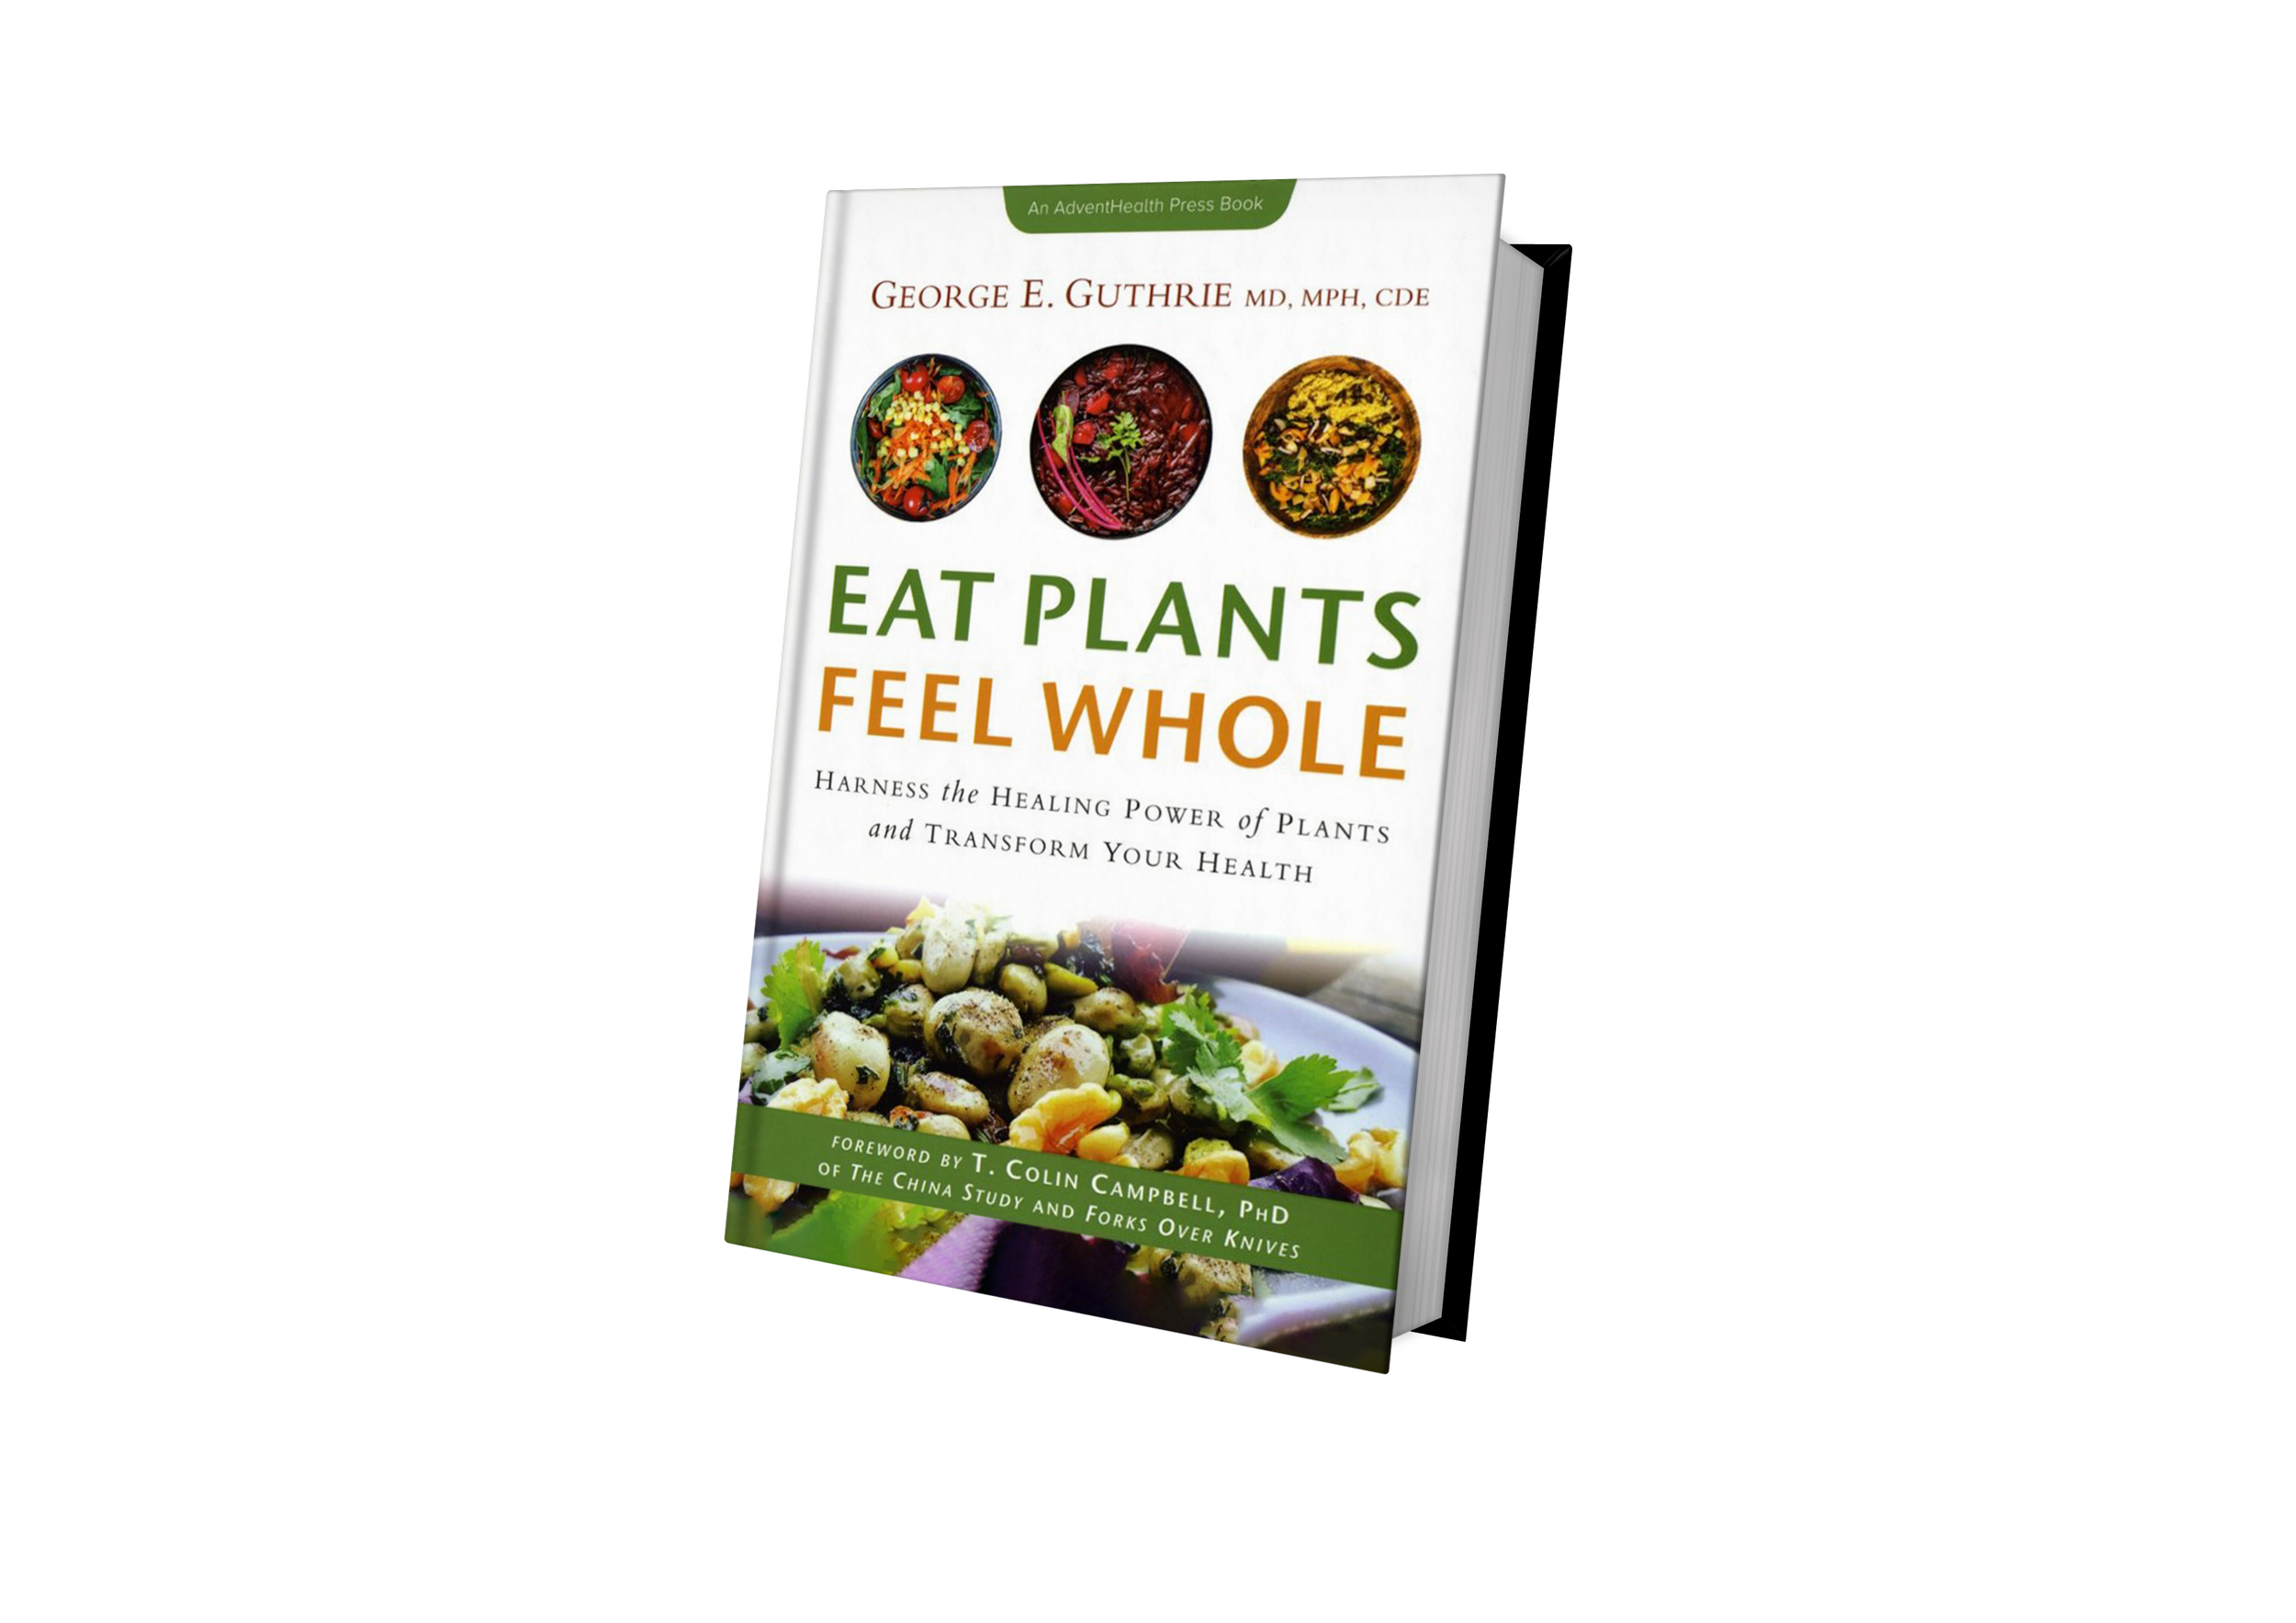 Eat plants feel whole